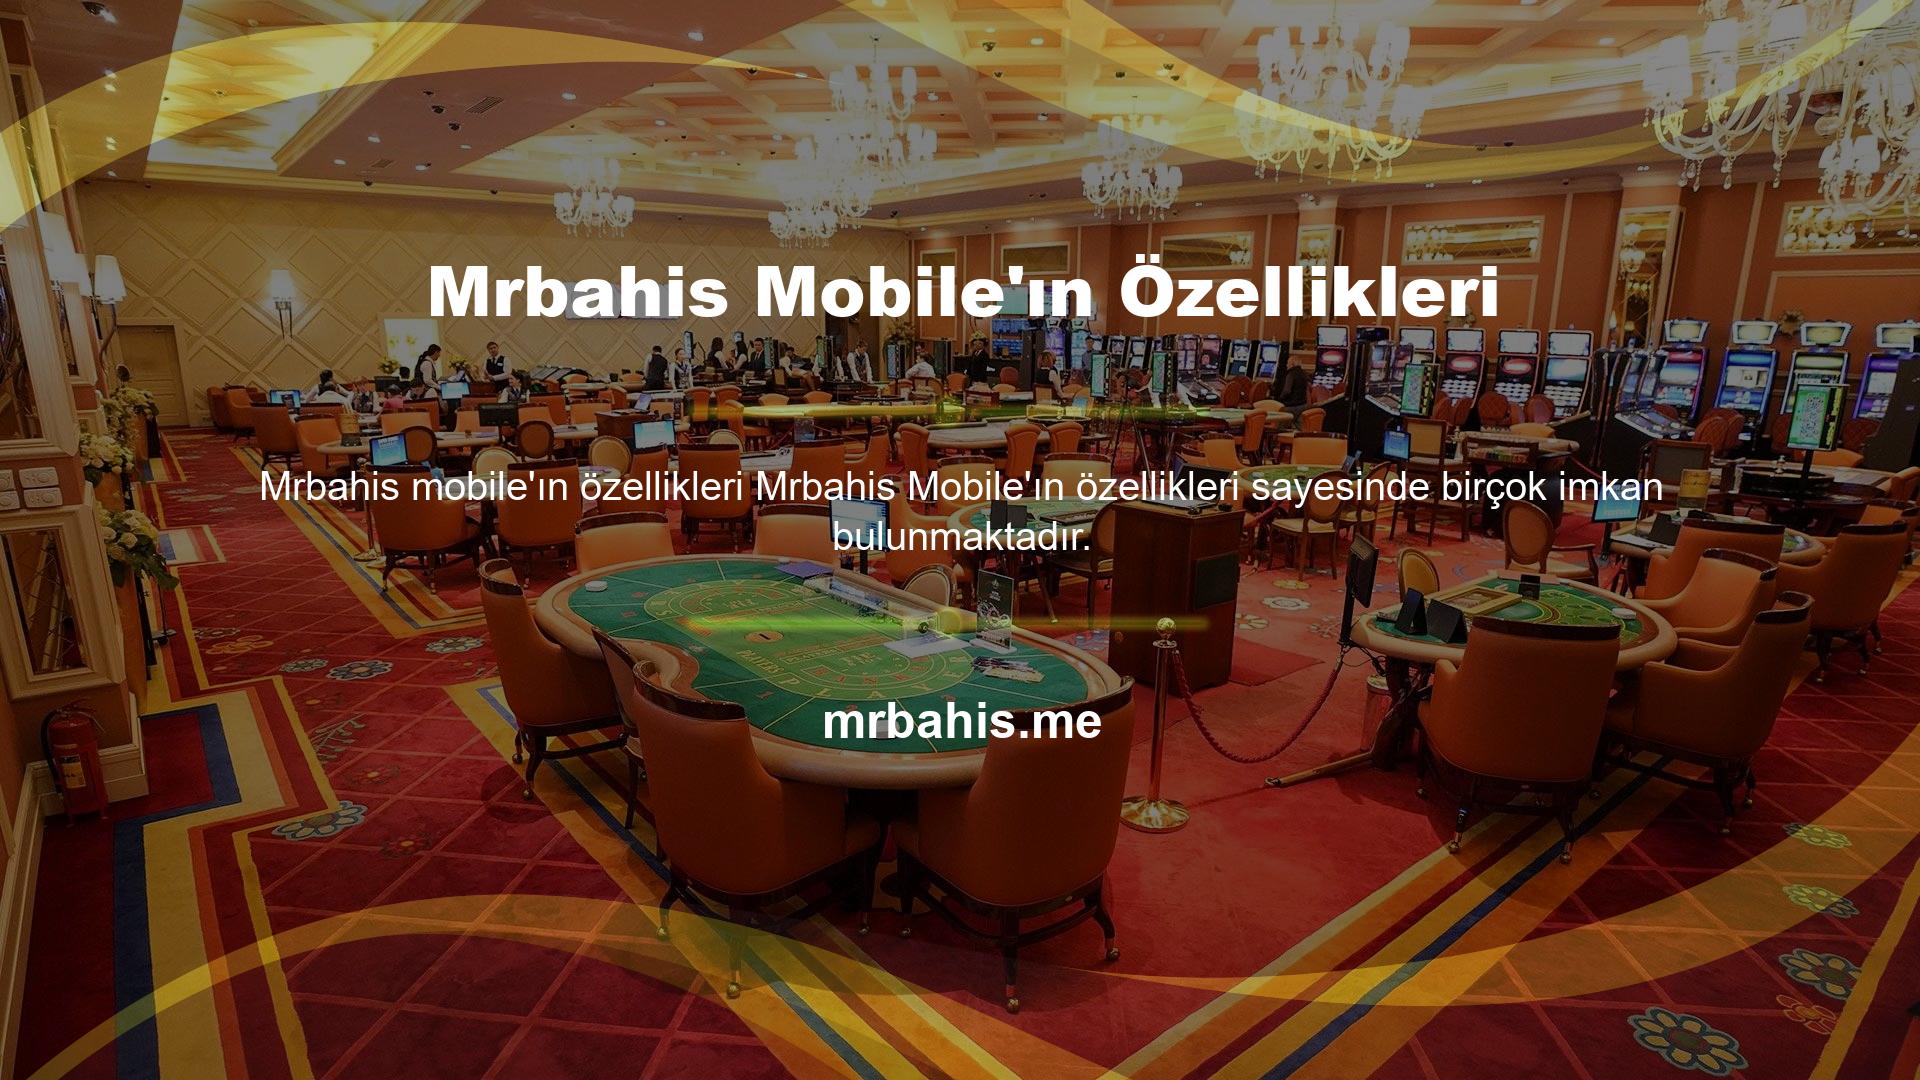 Son zamanlarda Mrbahis, akıllı telefon bahislerini destekleyen bir web sitesine dönüştü, bu nedenle canlı bahis alanları için siteye mobil erişim de sunabiliyoruz